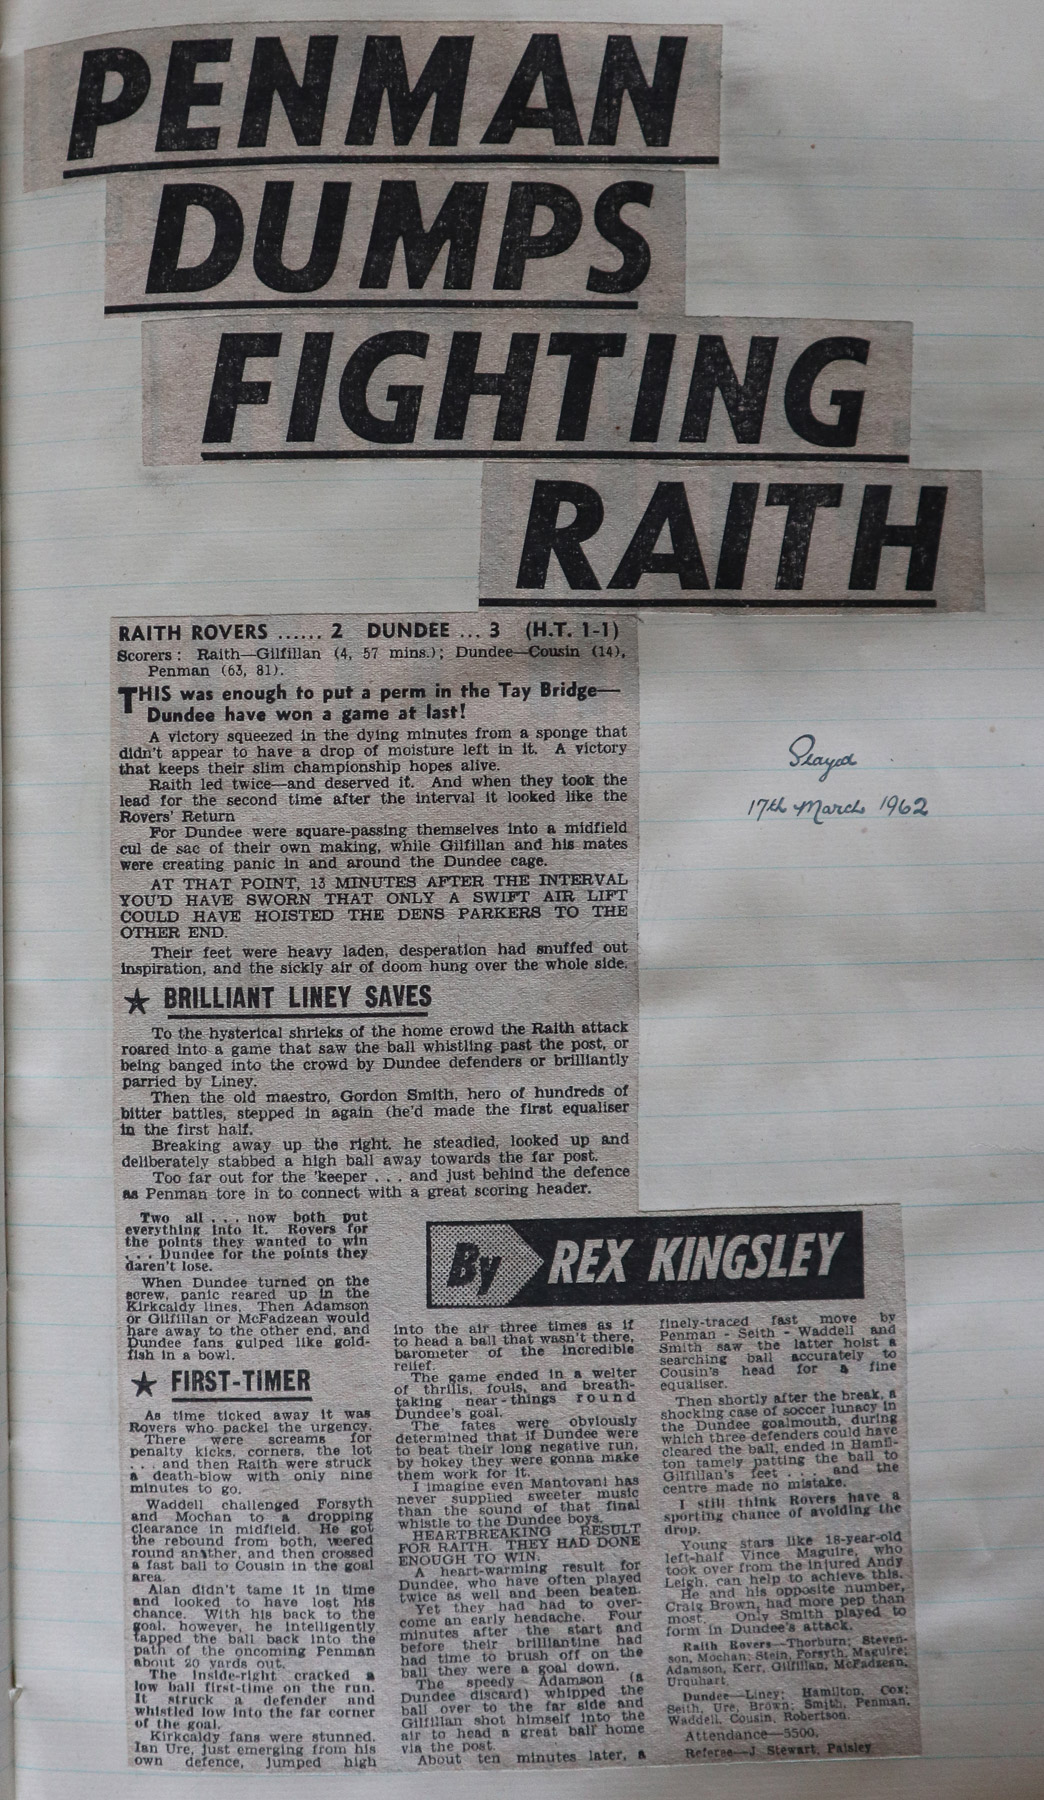 1962-03-17_Raith_Rovers_2-3_Dundee_L1_1